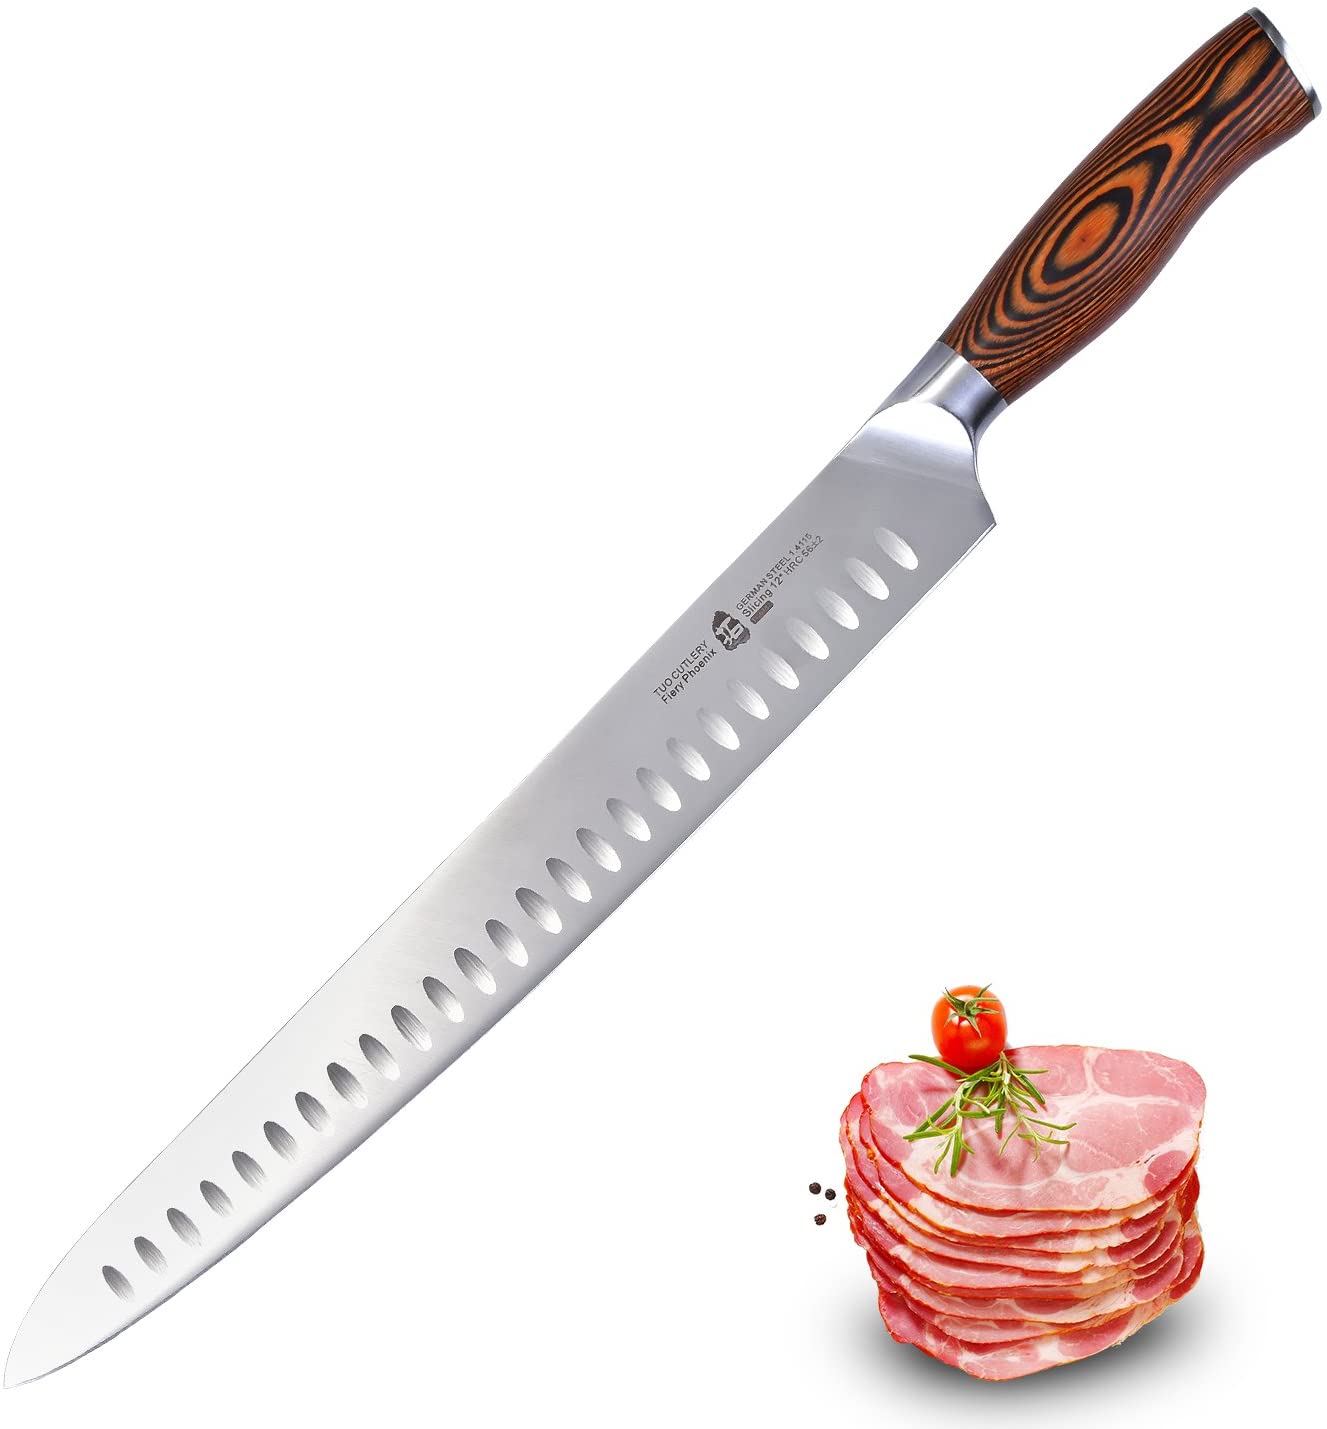 TUO 칼 슬라이스 조각 칼 - HC 독일 스테인레스 스틸 - 인체 공학적 Pakkawood 손잡이가있는 고기 칼 - Fiery 시리즈